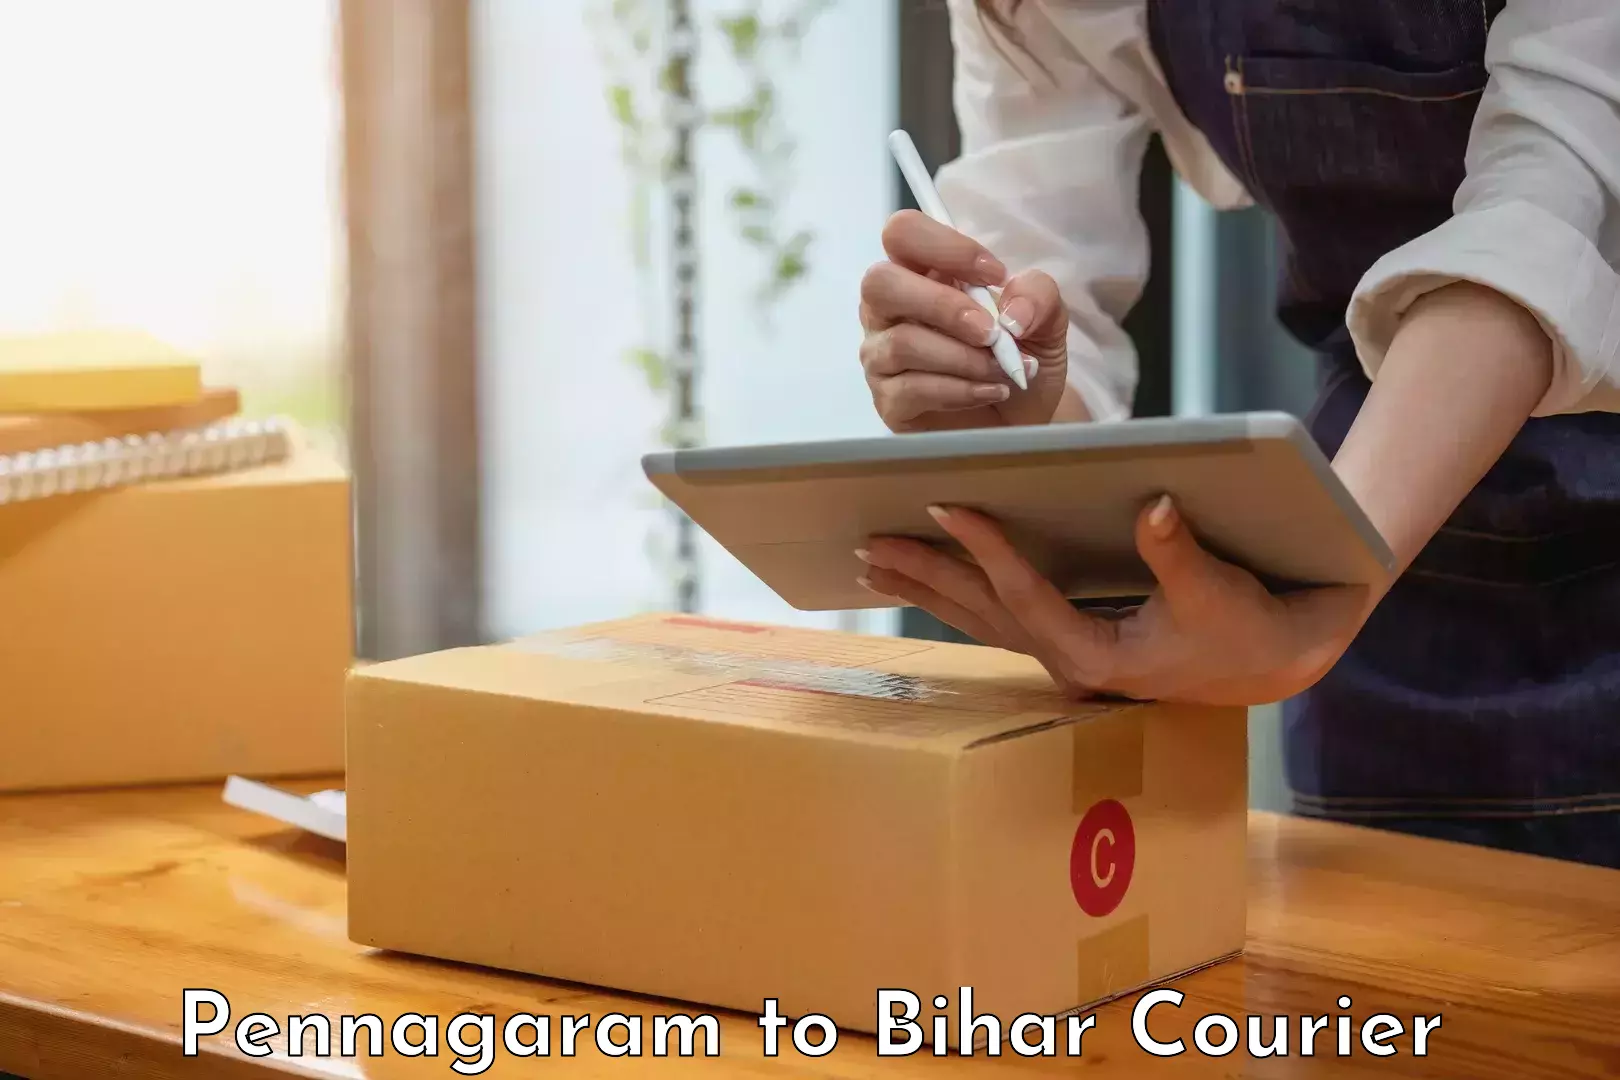 Modern courier technology Pennagaram to Bihar